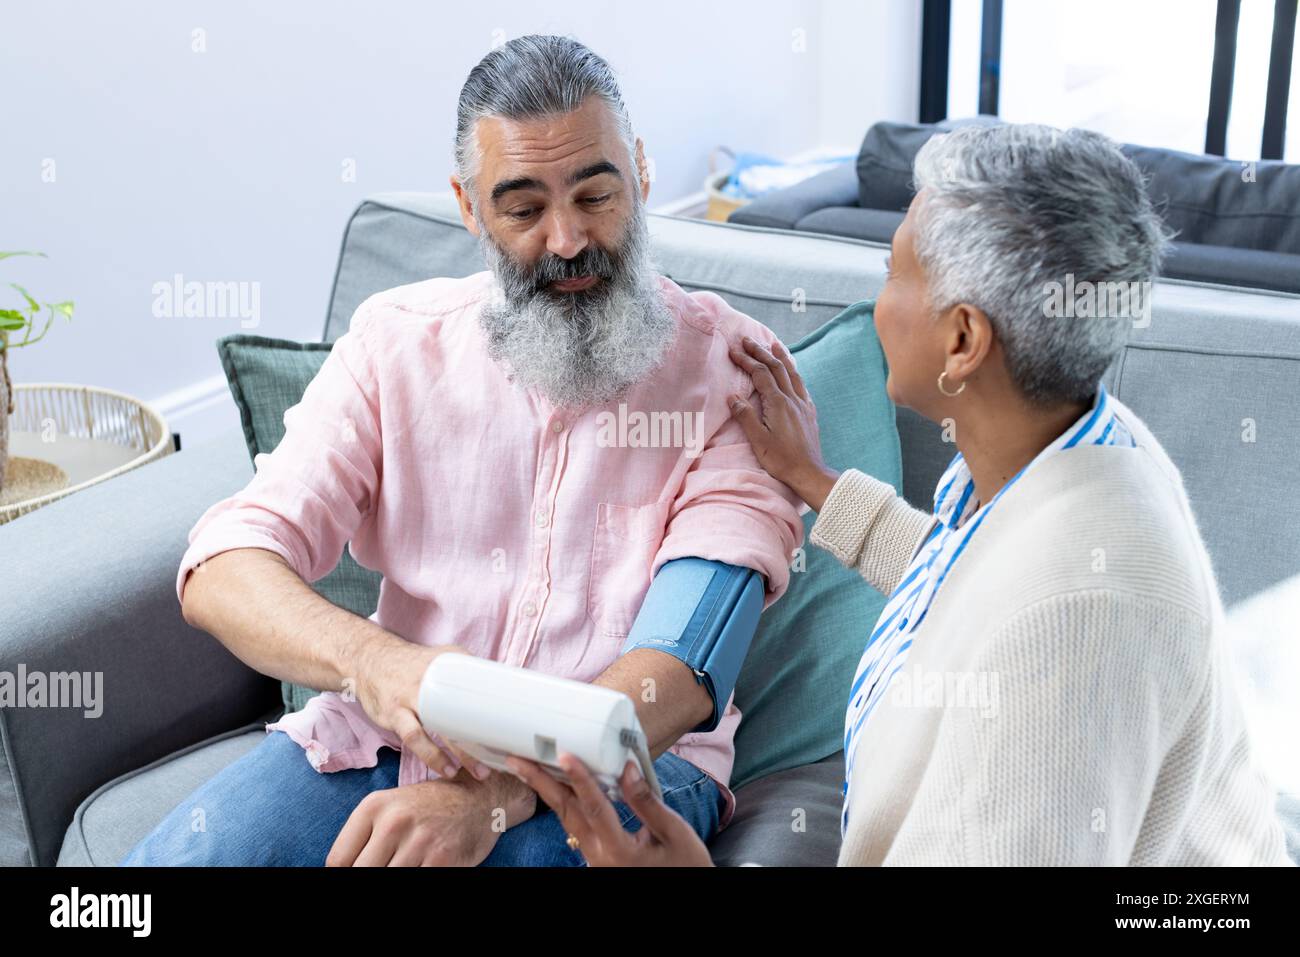 Vérification de la pression artérielle, homme senior assis sur le canapé avec la femme aidant Banque D'Images